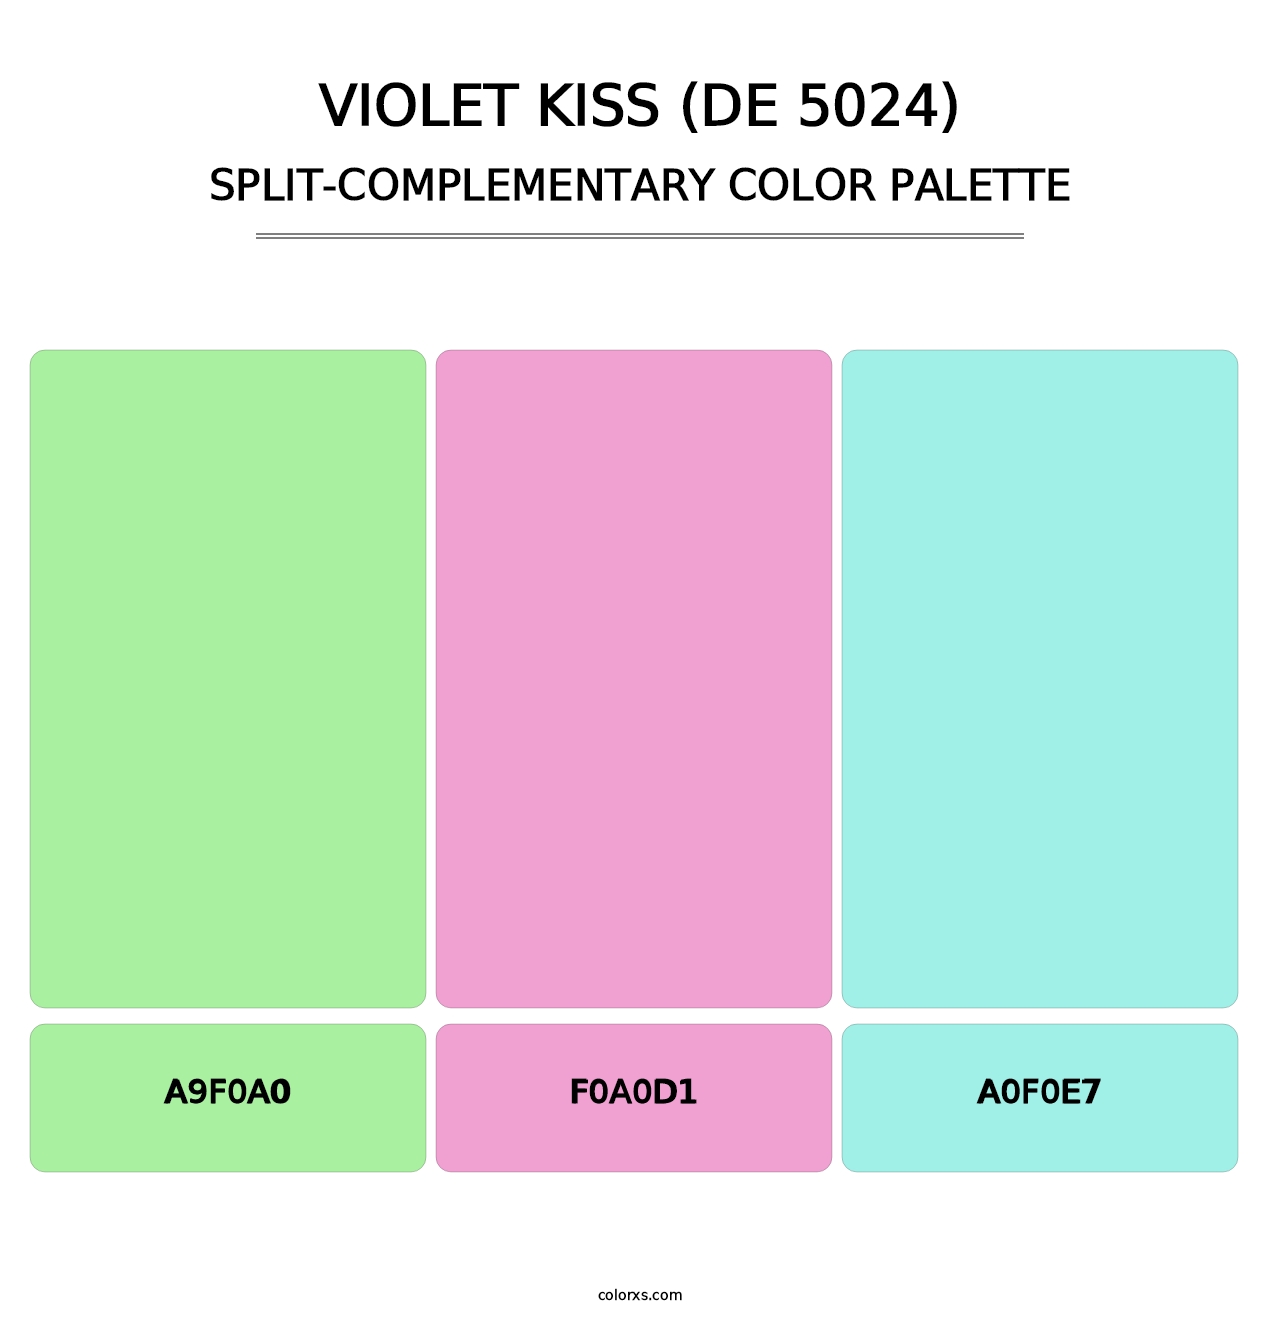 Violet Kiss (DE 5024) - Split-Complementary Color Palette